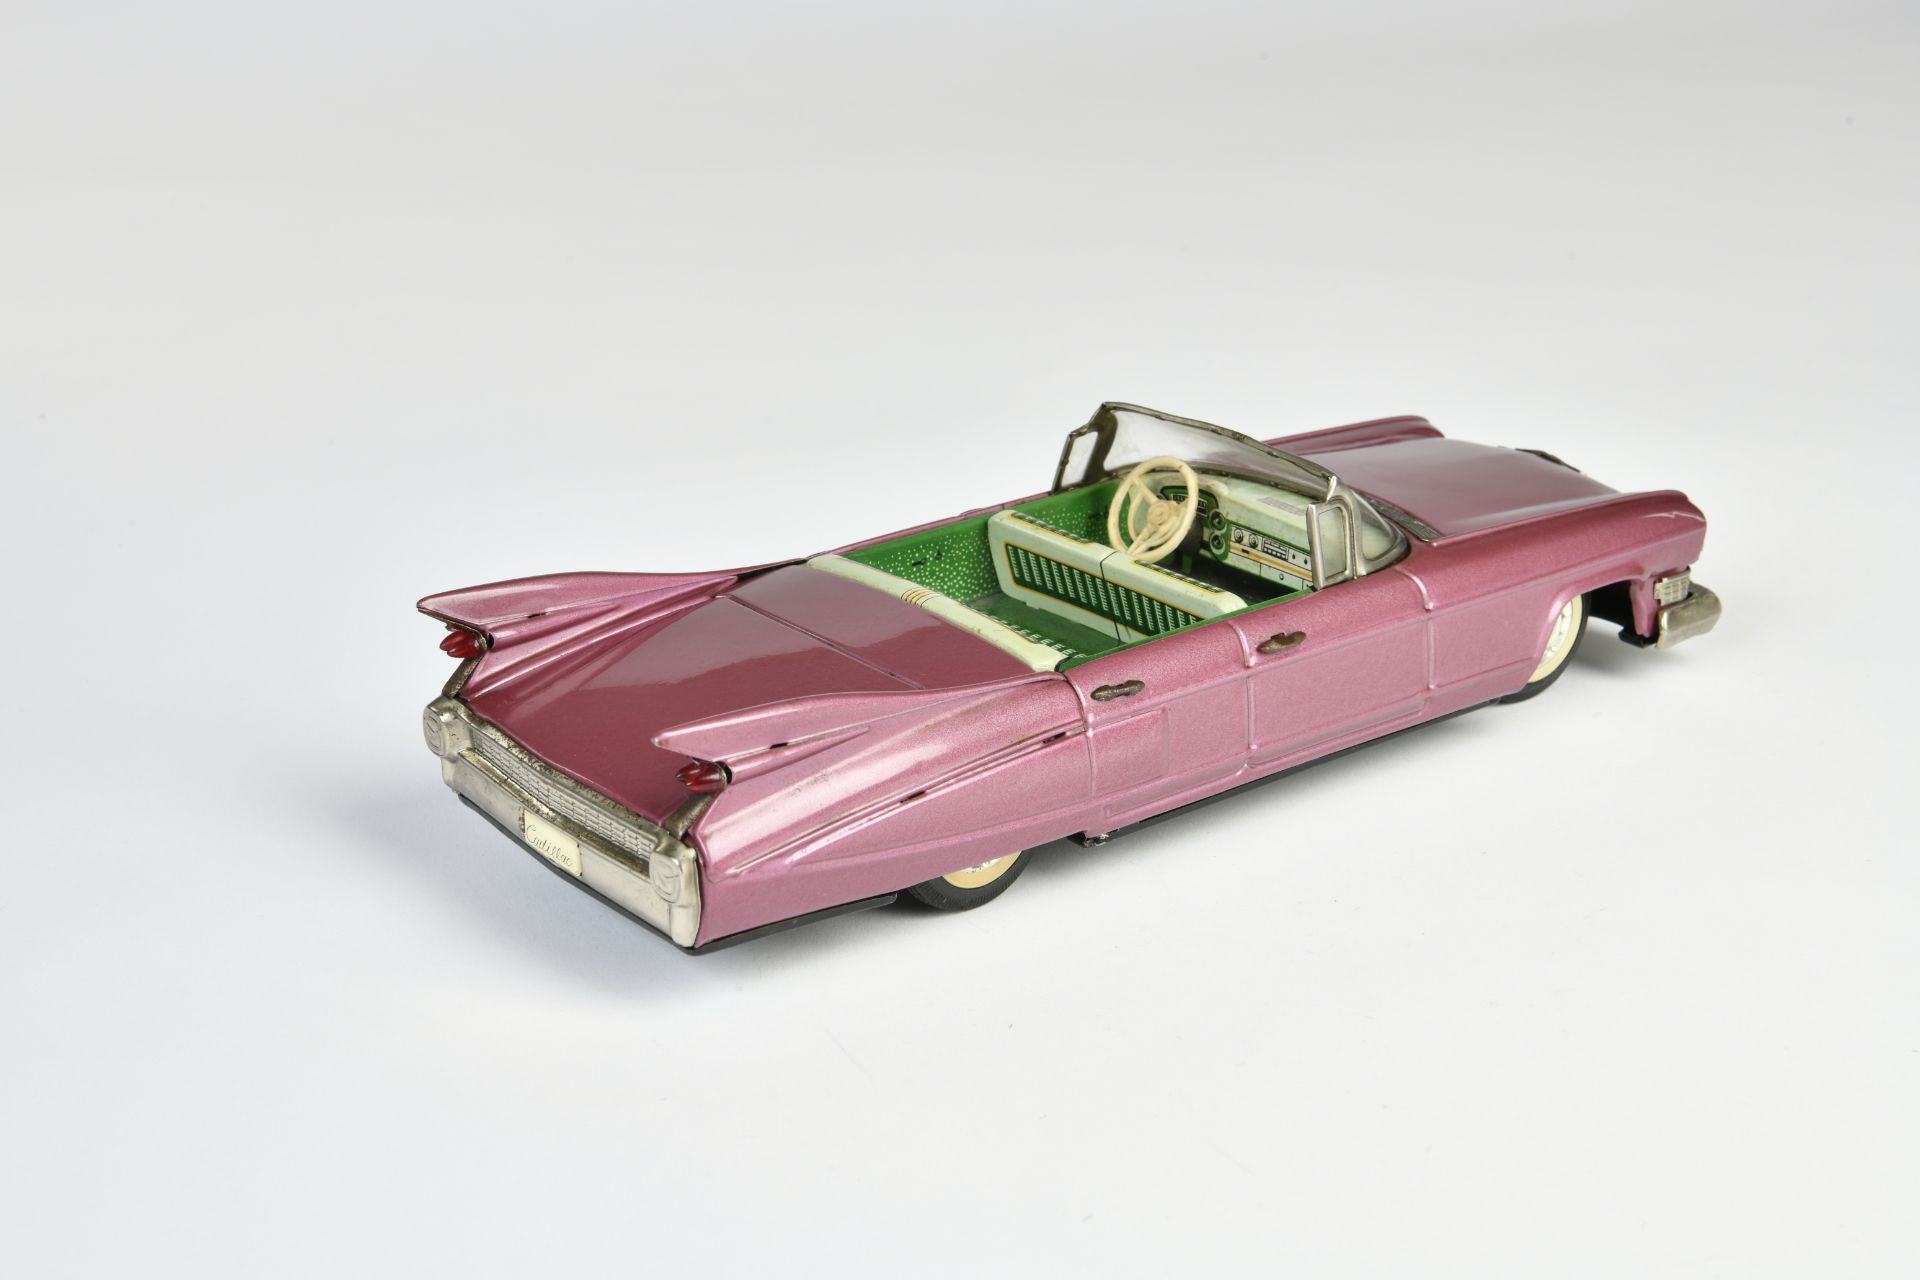 Bandai, Cadillac, Japan, 30 cm, tin, friction ok, rust d., C2- - Image 2 of 2